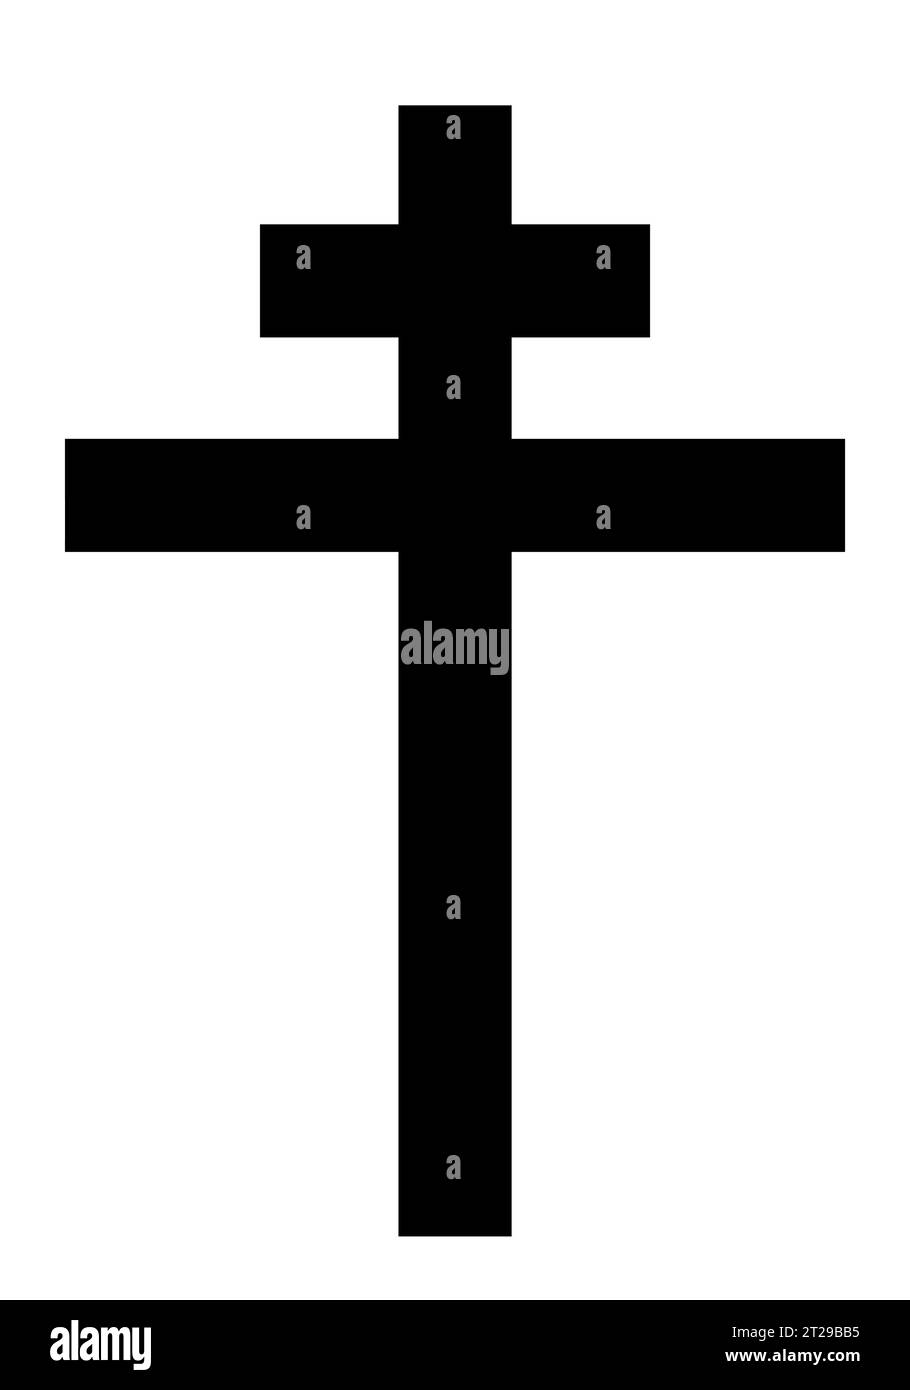 Patriarchales Kreuz, schwarz-weiße Vektor-Silhouette Illustration der religiösen christlichen Kreuzform, isoliert auf weiß Stock Vektor